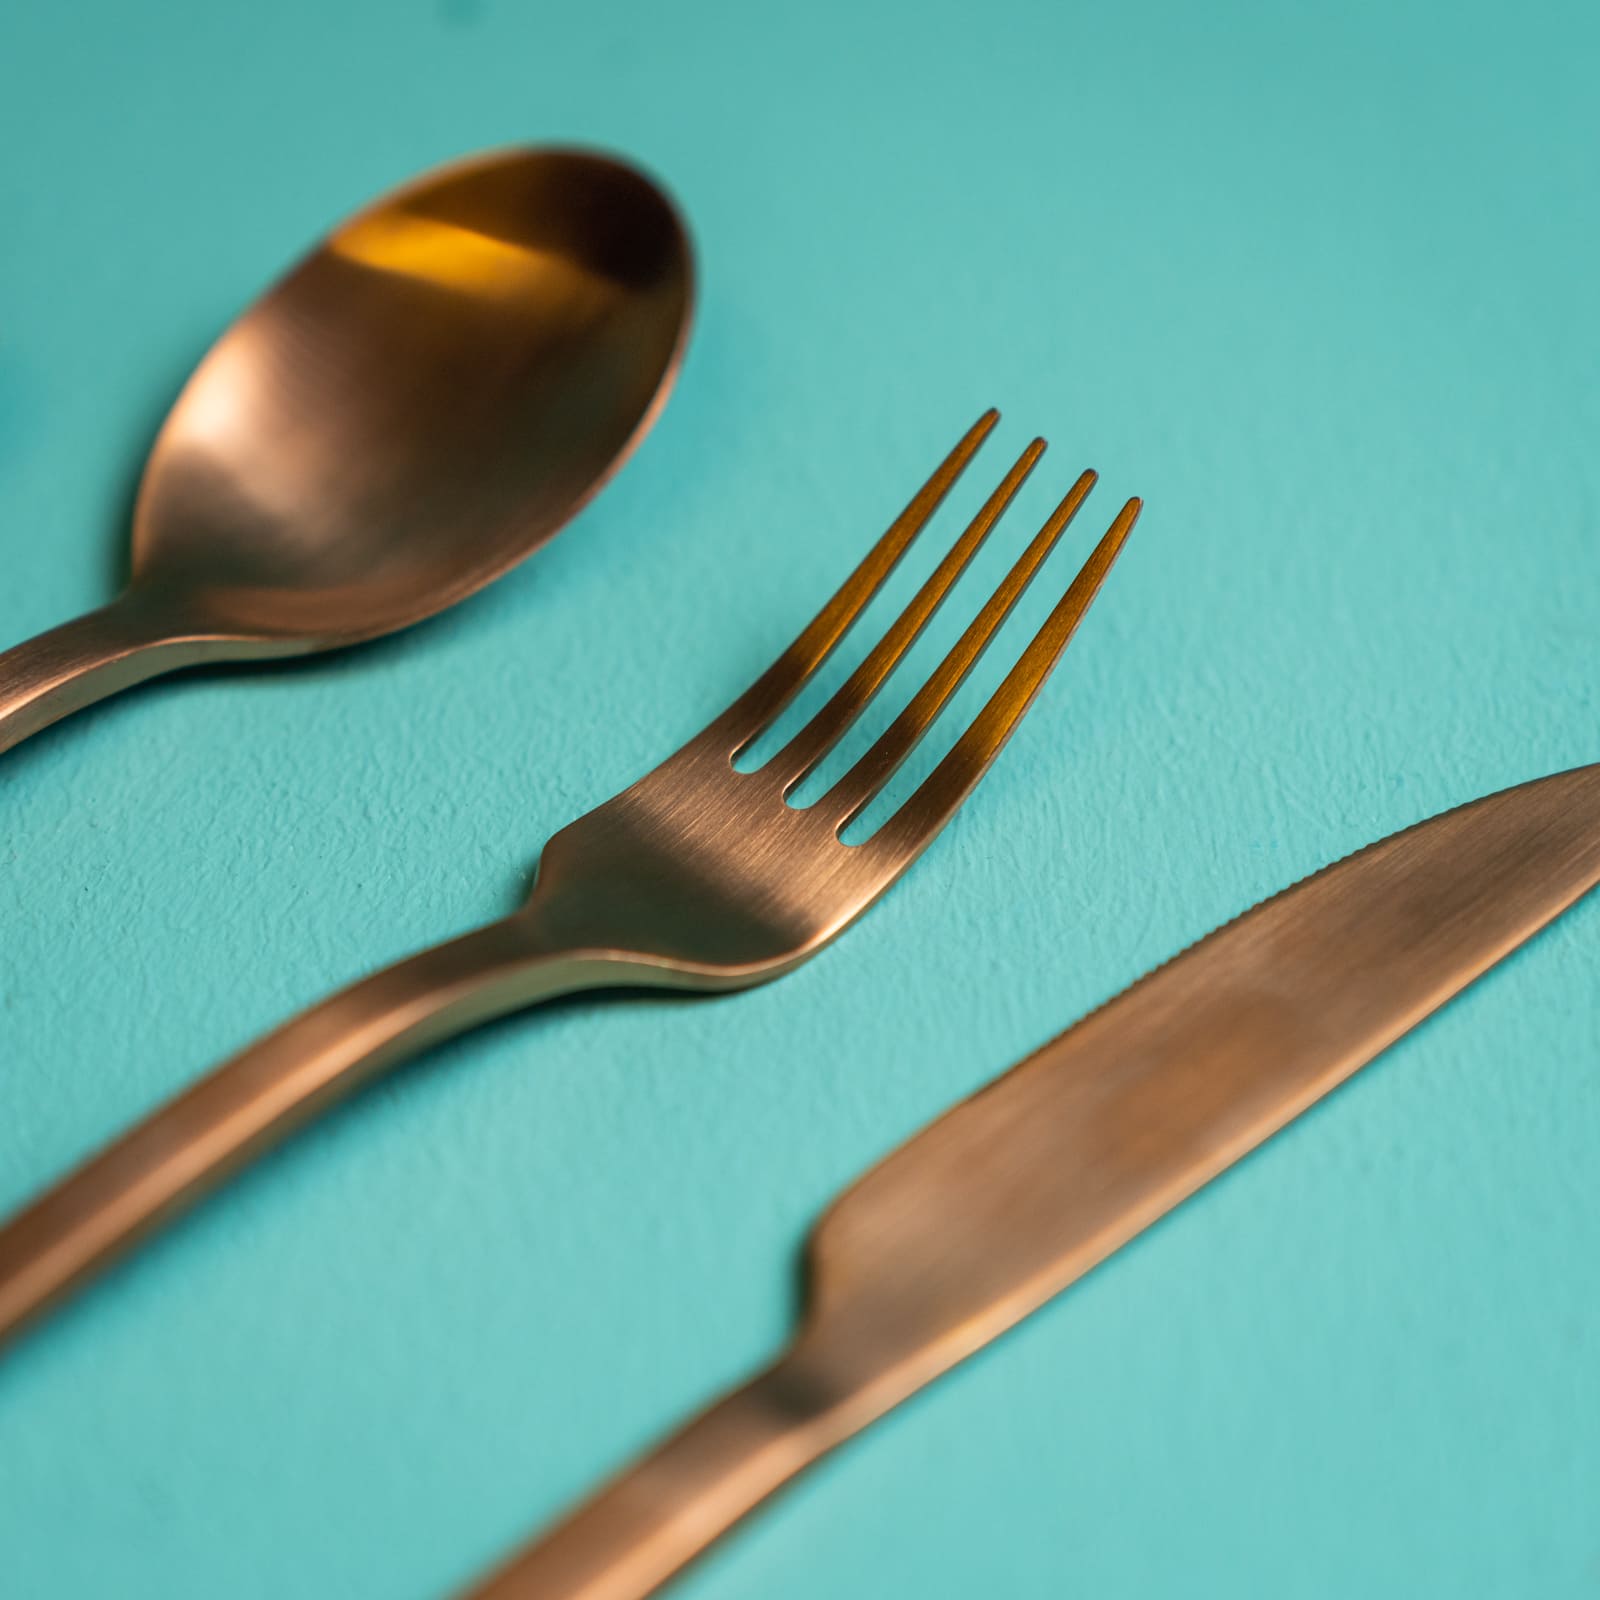 4er Besteckset Copper Cutlery, kupferfarben, Edelstahl 18/10, 25x17x3cm